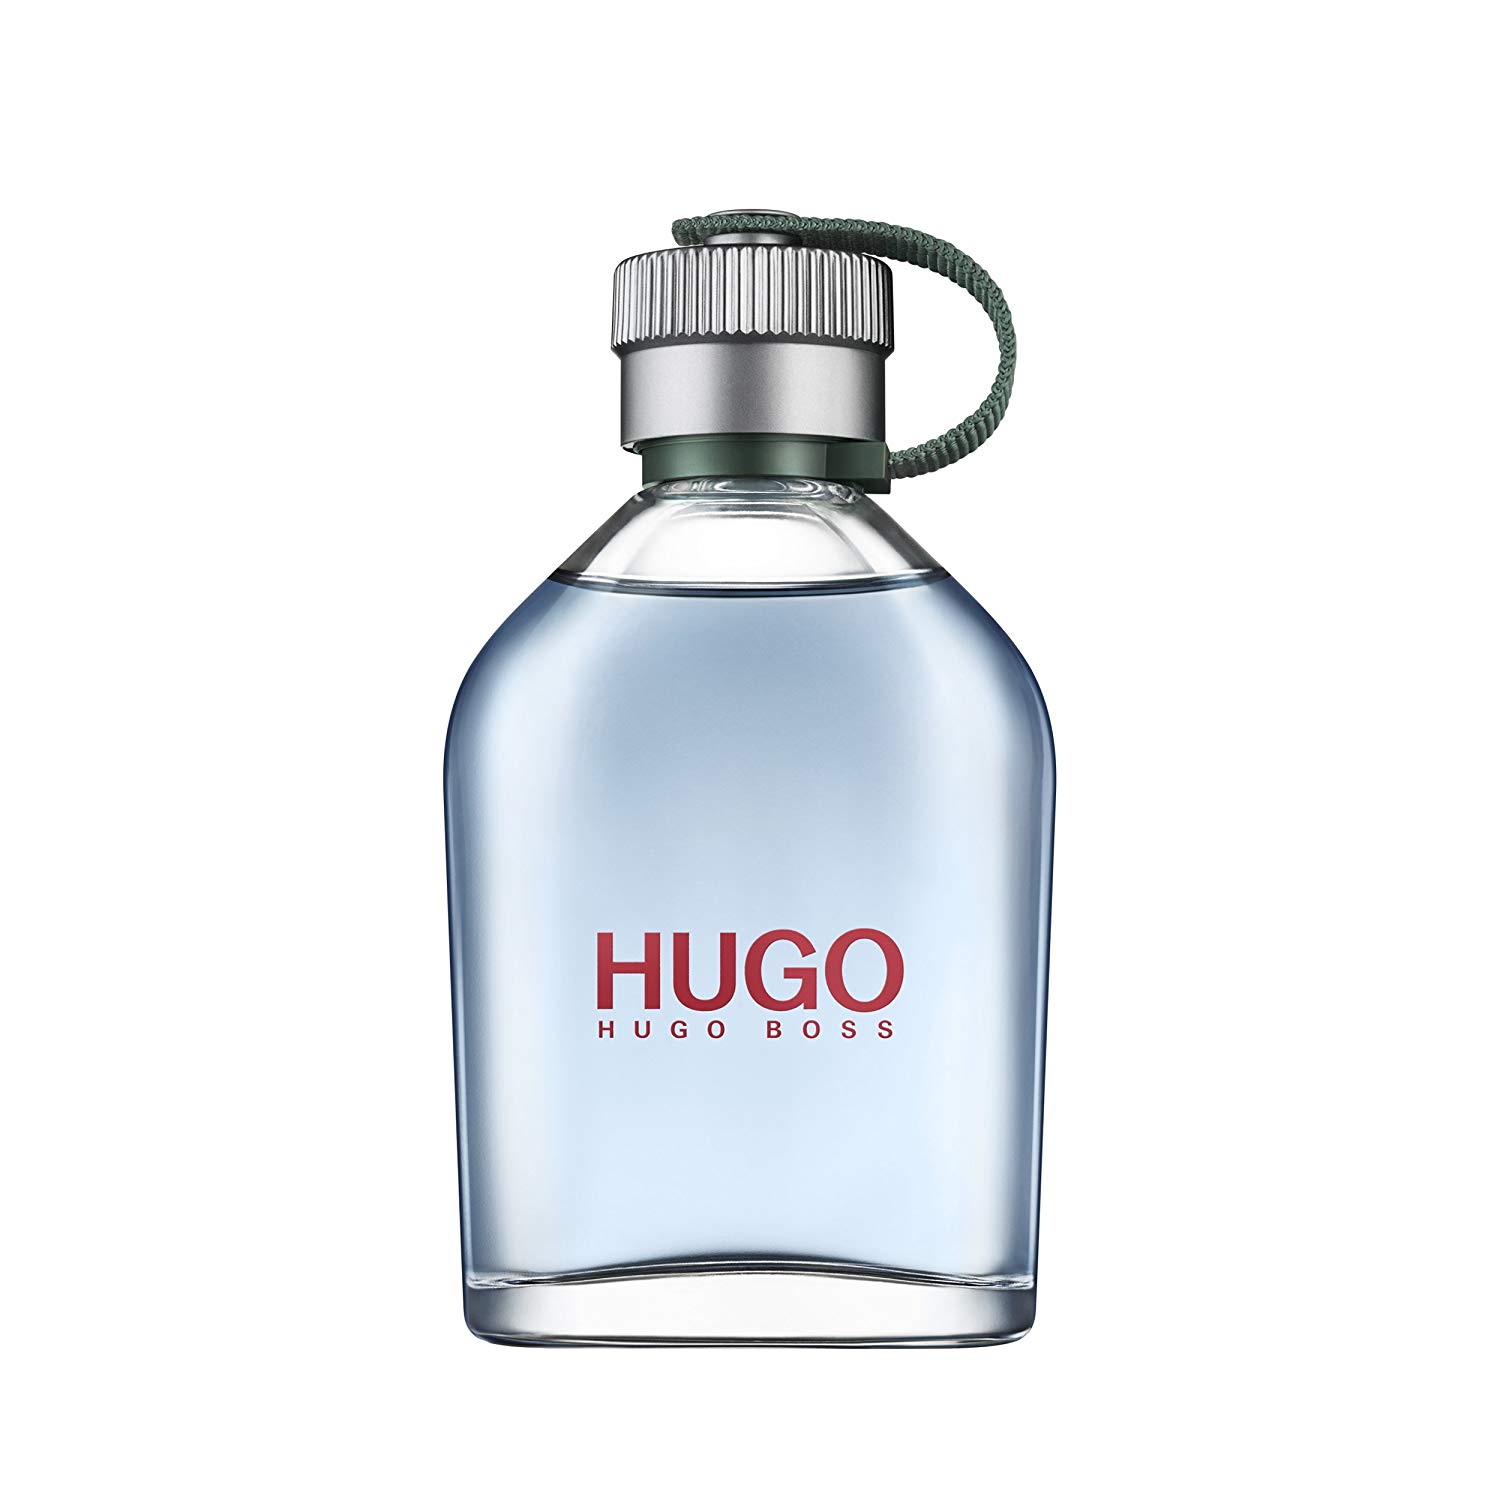 HUGO BOSS GREEN EDT 125ML FOR MEN | Perfume in Bangladesh